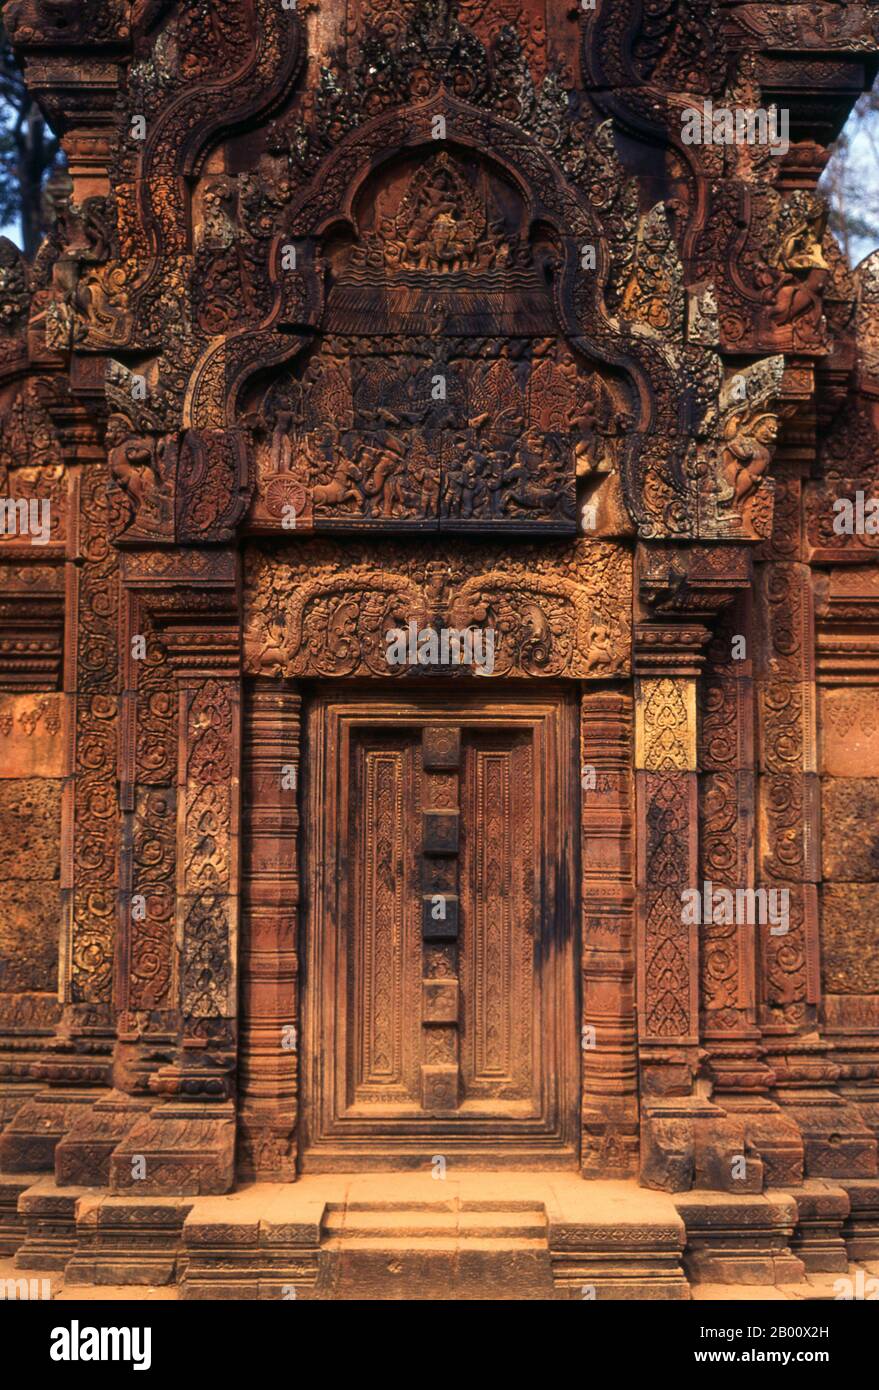 Kambodscha: Bibliothek, Banteay Srei (Zitadelle der Frauen), bei Angkor. Banteay Srei (oder Banteay Srey) ist ein kambodschanischer Tempel aus dem 10. Jahrhundert, der dem Hindu-gott Shiva gewidmet ist und im Nordosten der Hauptgruppe von Tempeln in Angkor liegt. Banteay Srei ist weitgehend aus rotem Sandstein gebaut, ein Medium, das sich für die aufwendigen dekorativen Wandschnitzereien eignet, die noch heute zu beobachten sind. Banteay Srei wird manchmal als das "Juwel der Khmer-Kunst" bezeichnet. Stockfoto